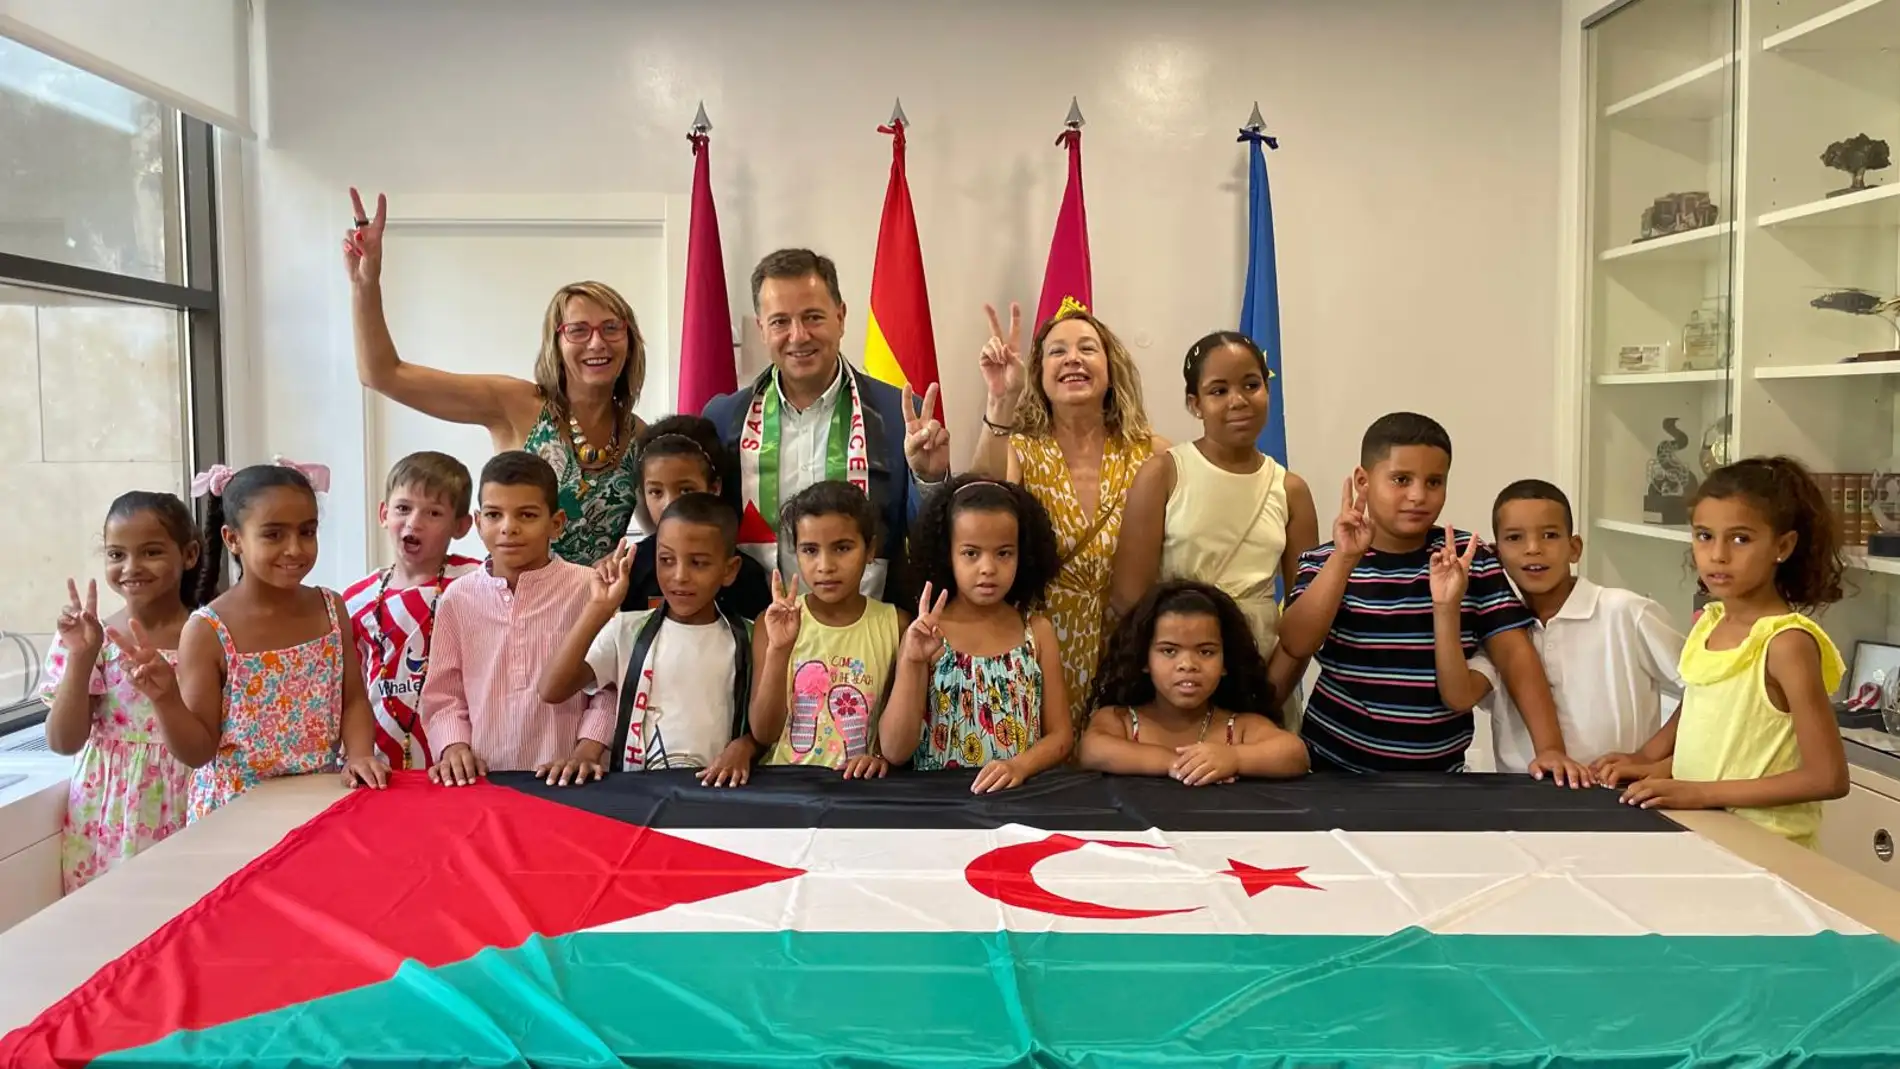 El Alcalde. la coordinadora y la portavoz del programa posaban con los niños y niñas saharauis